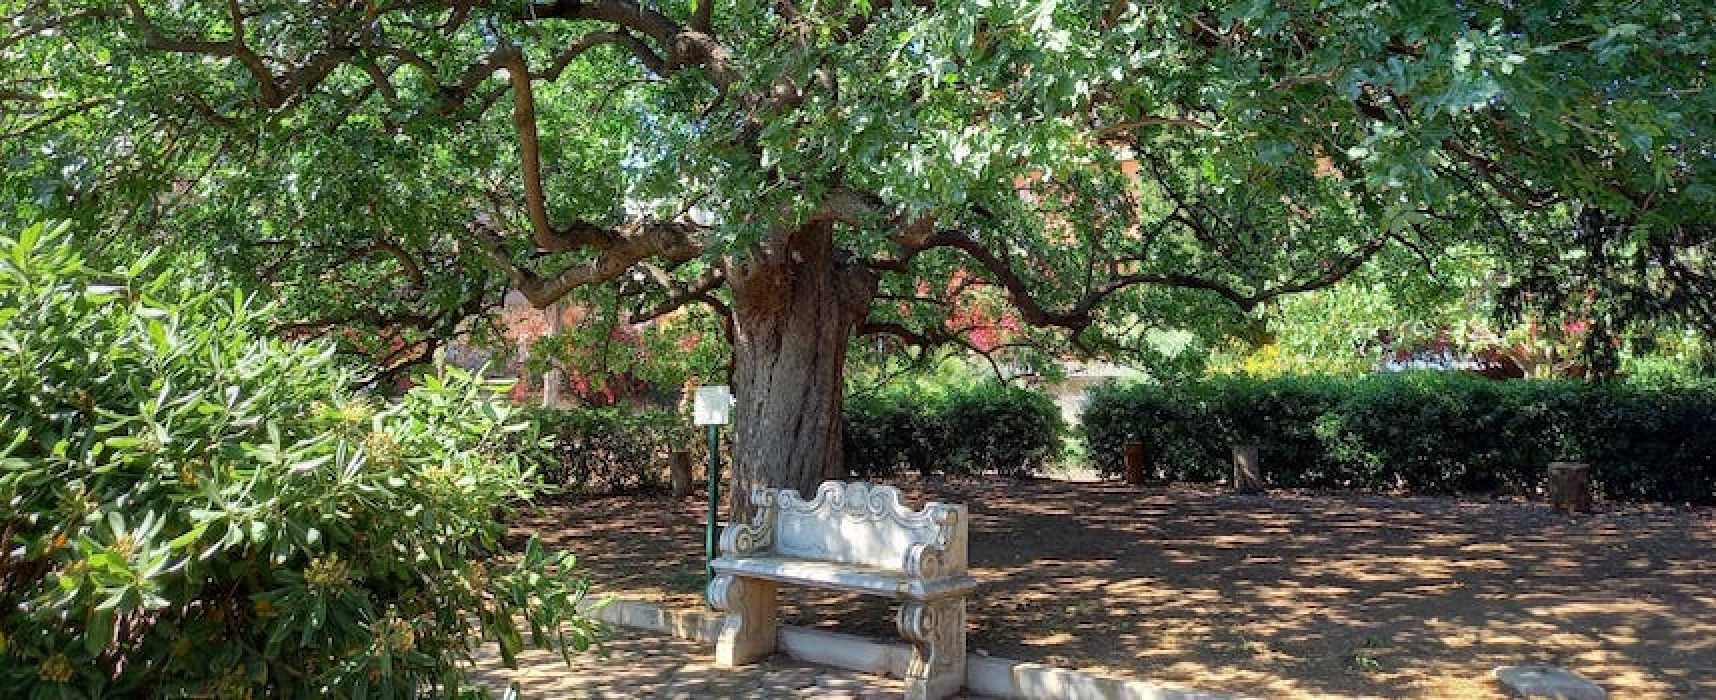 “Autunno in giardino”: Giardino Botanico Veneziani riapre le porte al pubblico